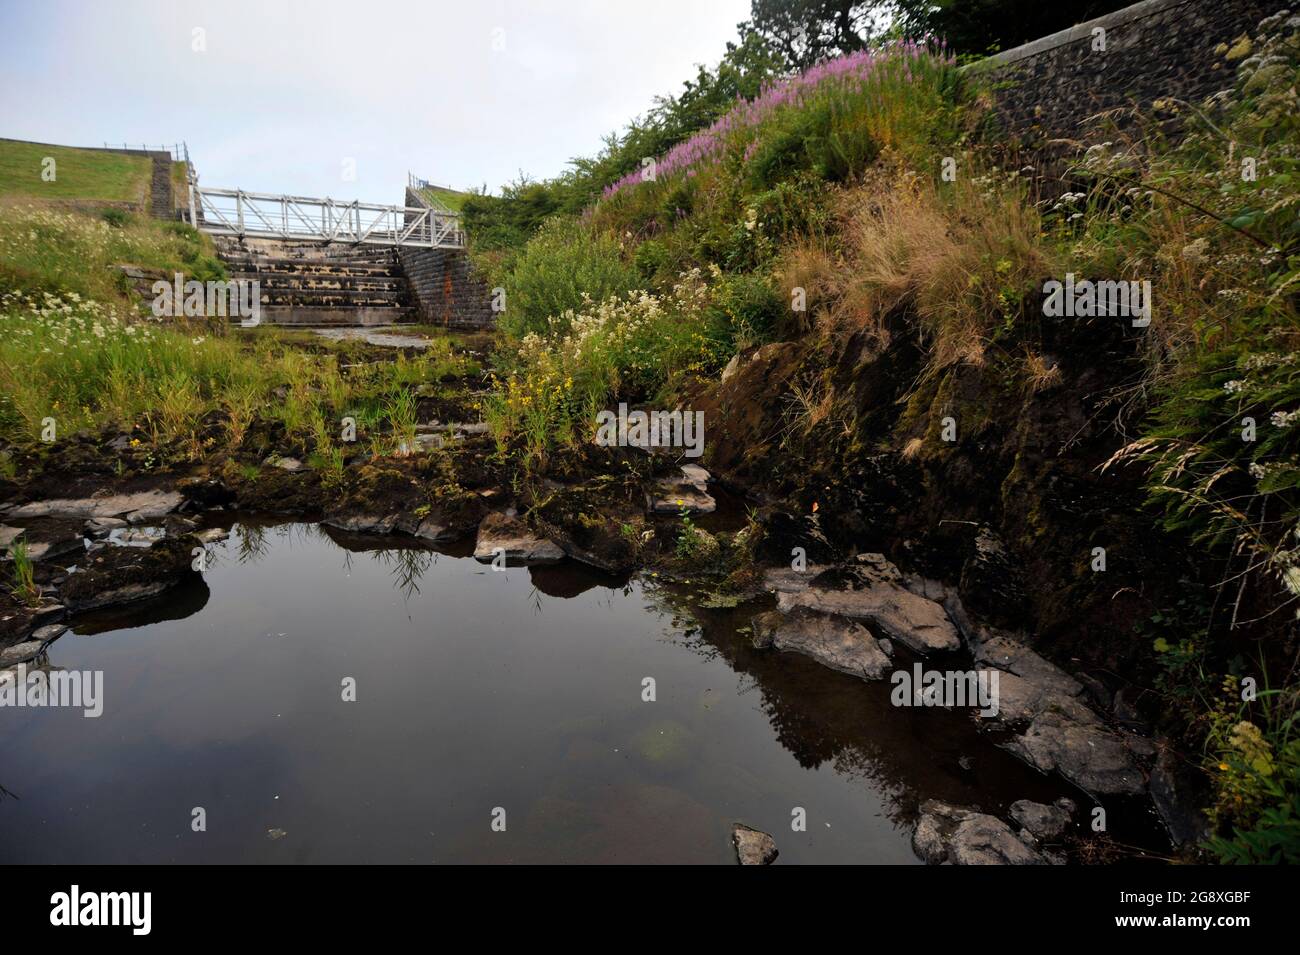 Ungewöhnlich heißes Wetter führt dazu, dass der Wasserstand am Camphill Reservoir, North Ayrshire, Schottland, sinkt, der Quelle für fast alle Gebiete Süßwasser. Stockfoto